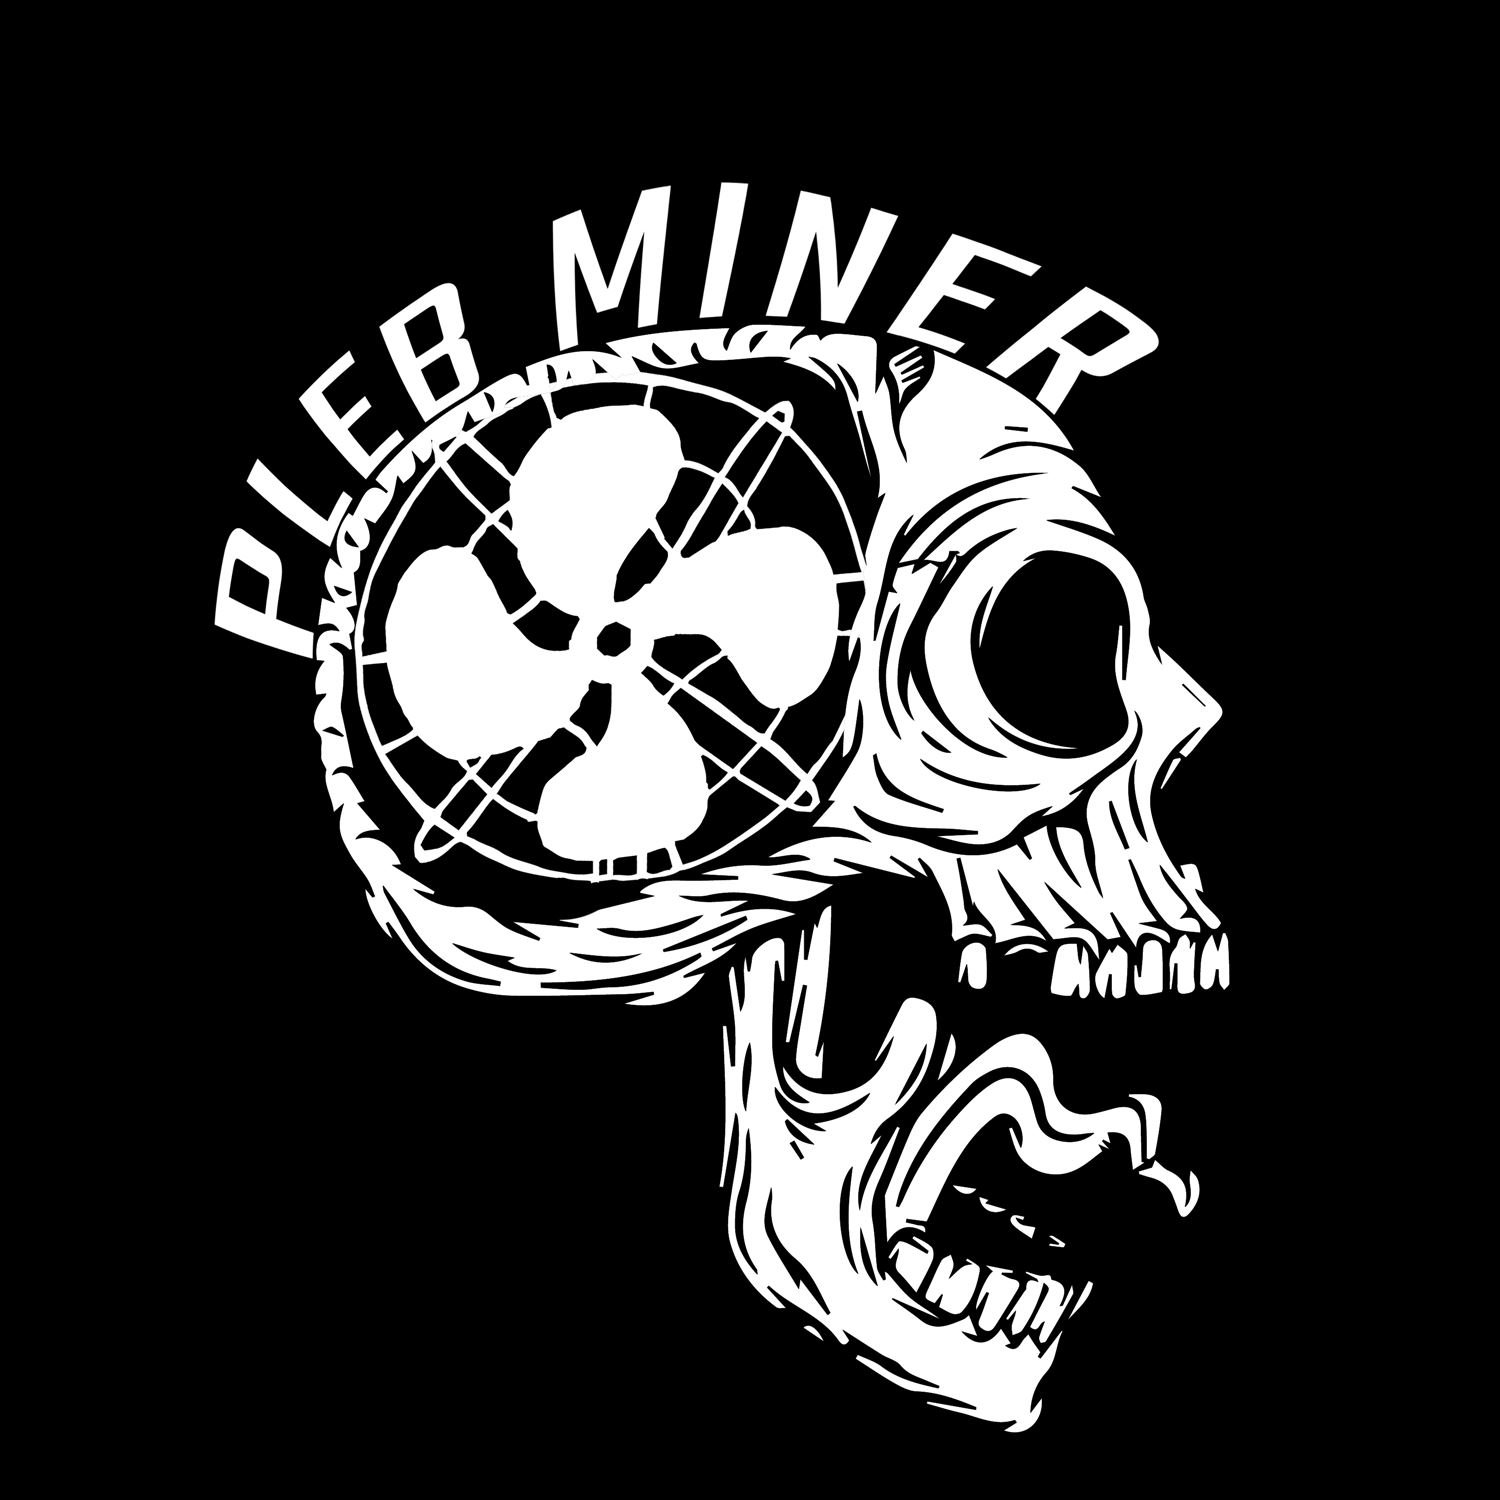 Pleb Miner Monthly EP02